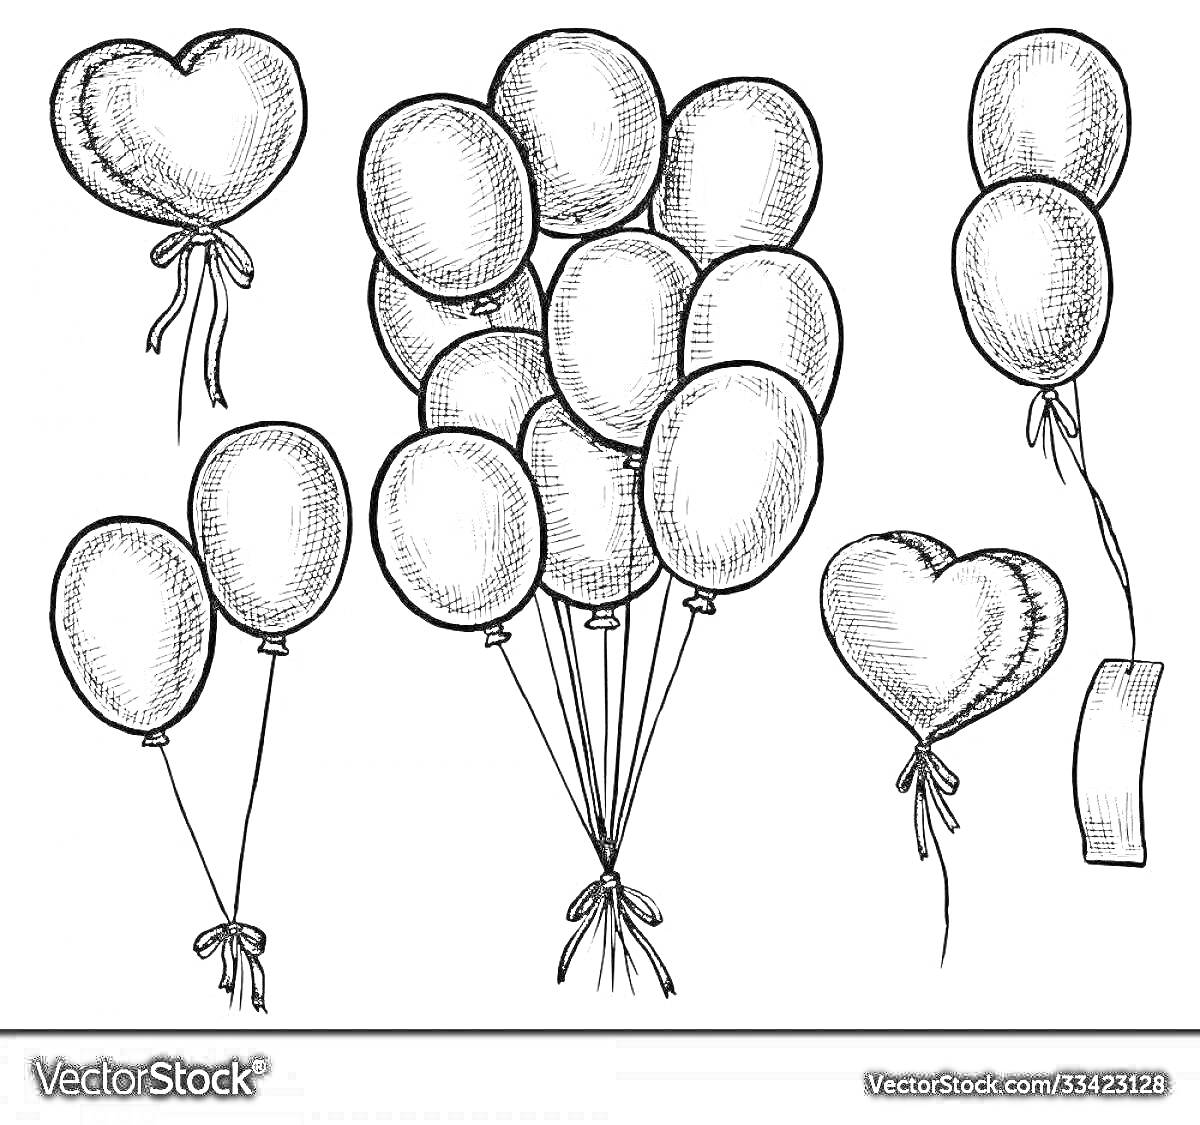 Раскраска Воздушные шары в форме сердца и овальные, связки из воздушных шаров с лентами